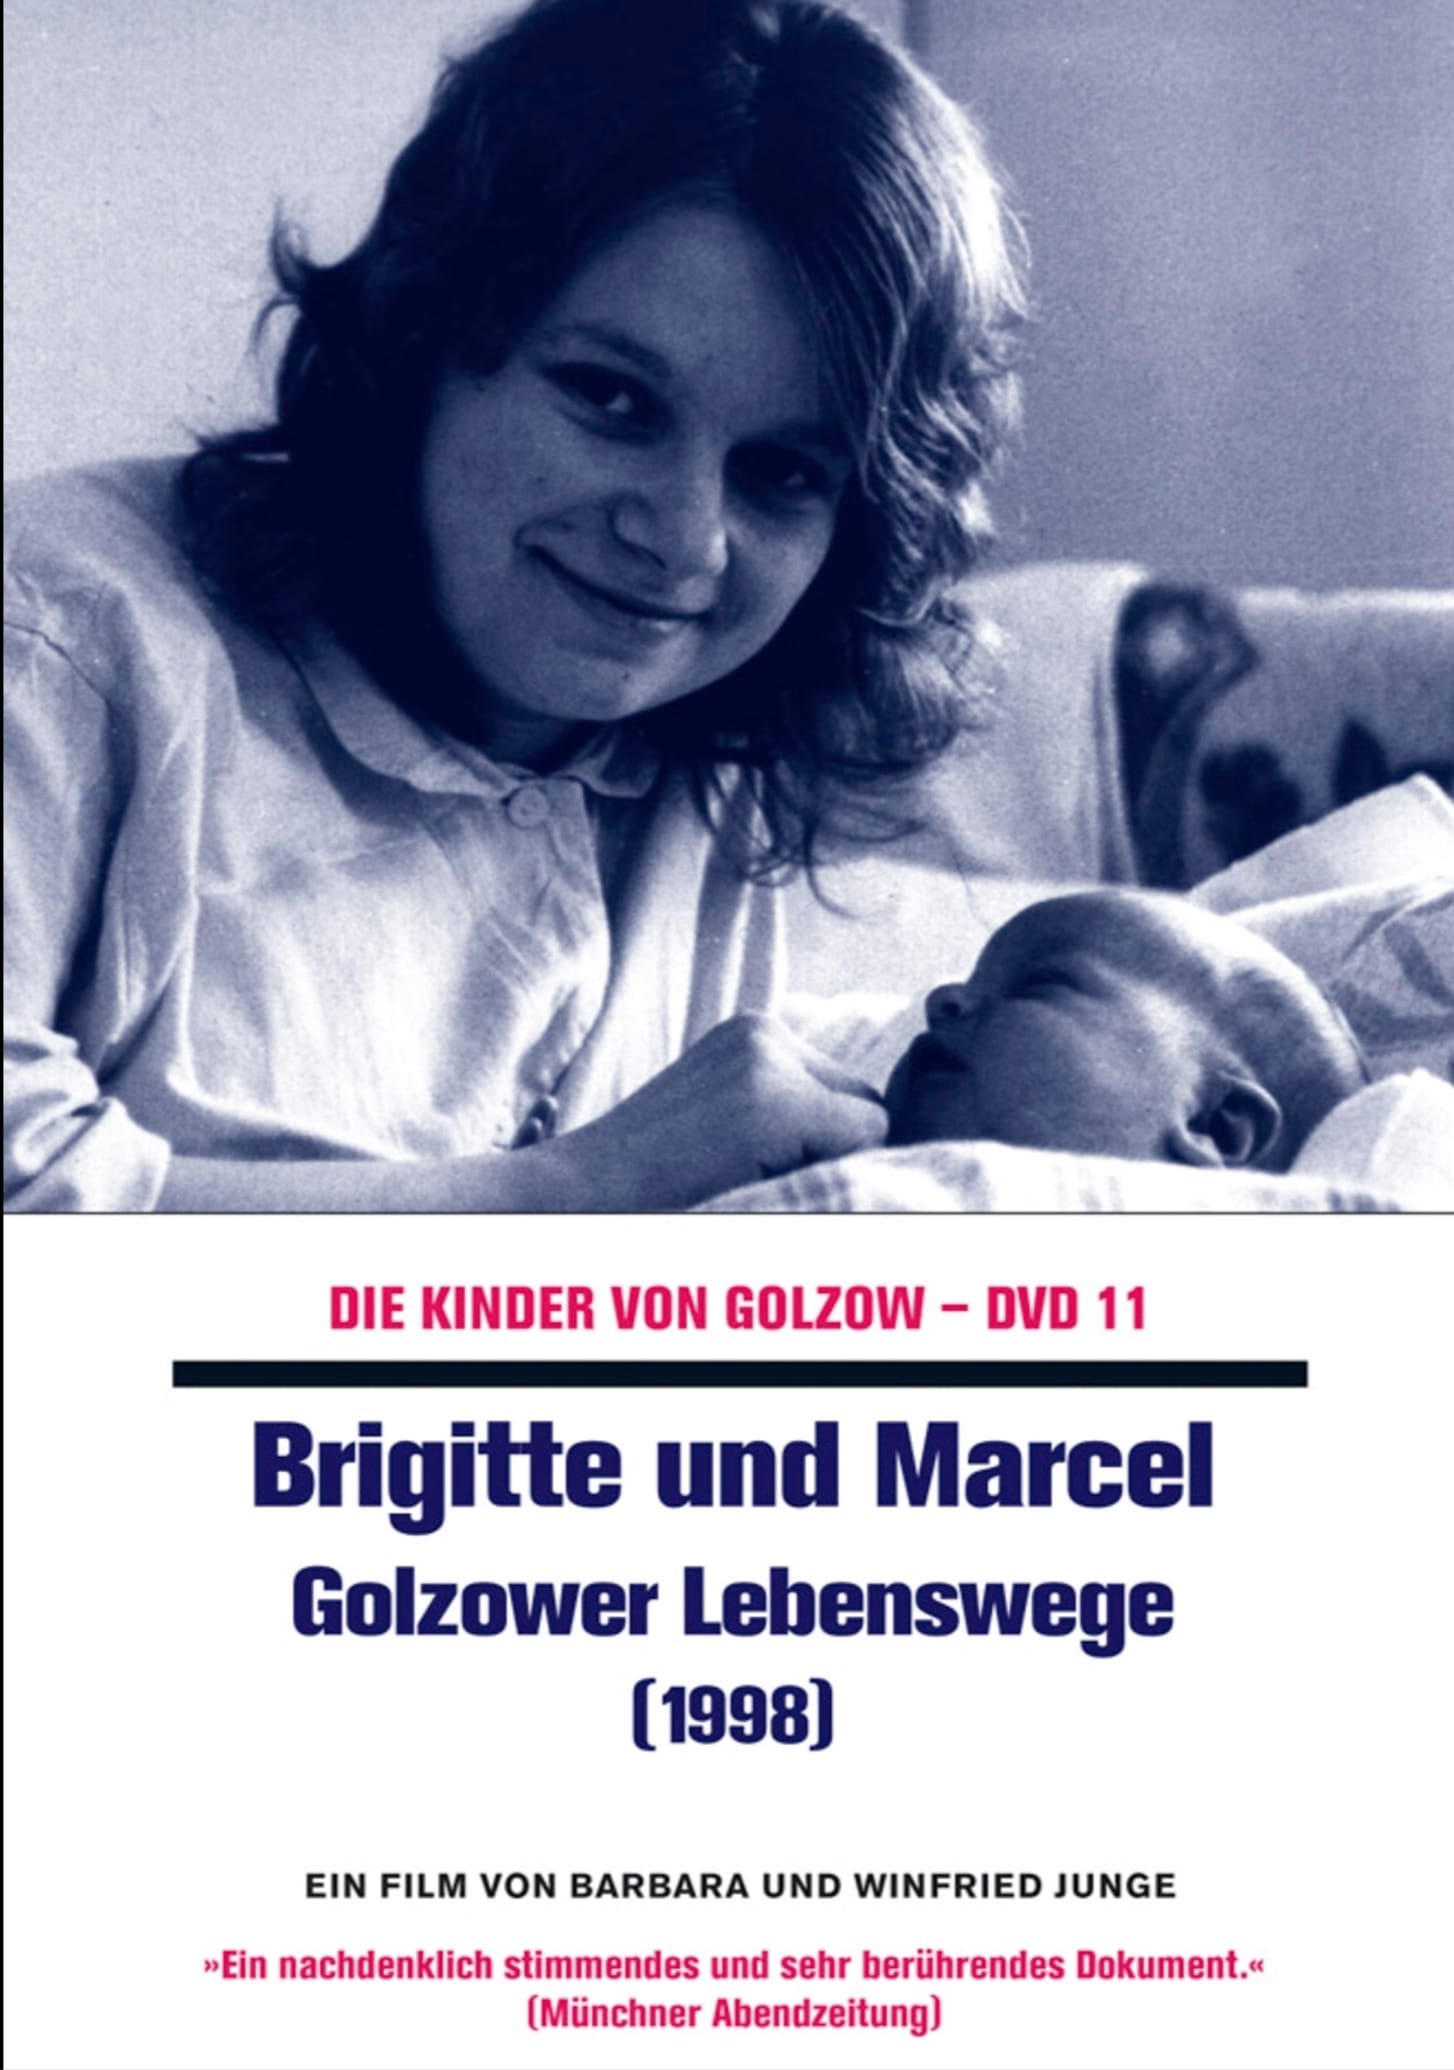 Brigitte und Marcel - Golzower Lebenswege